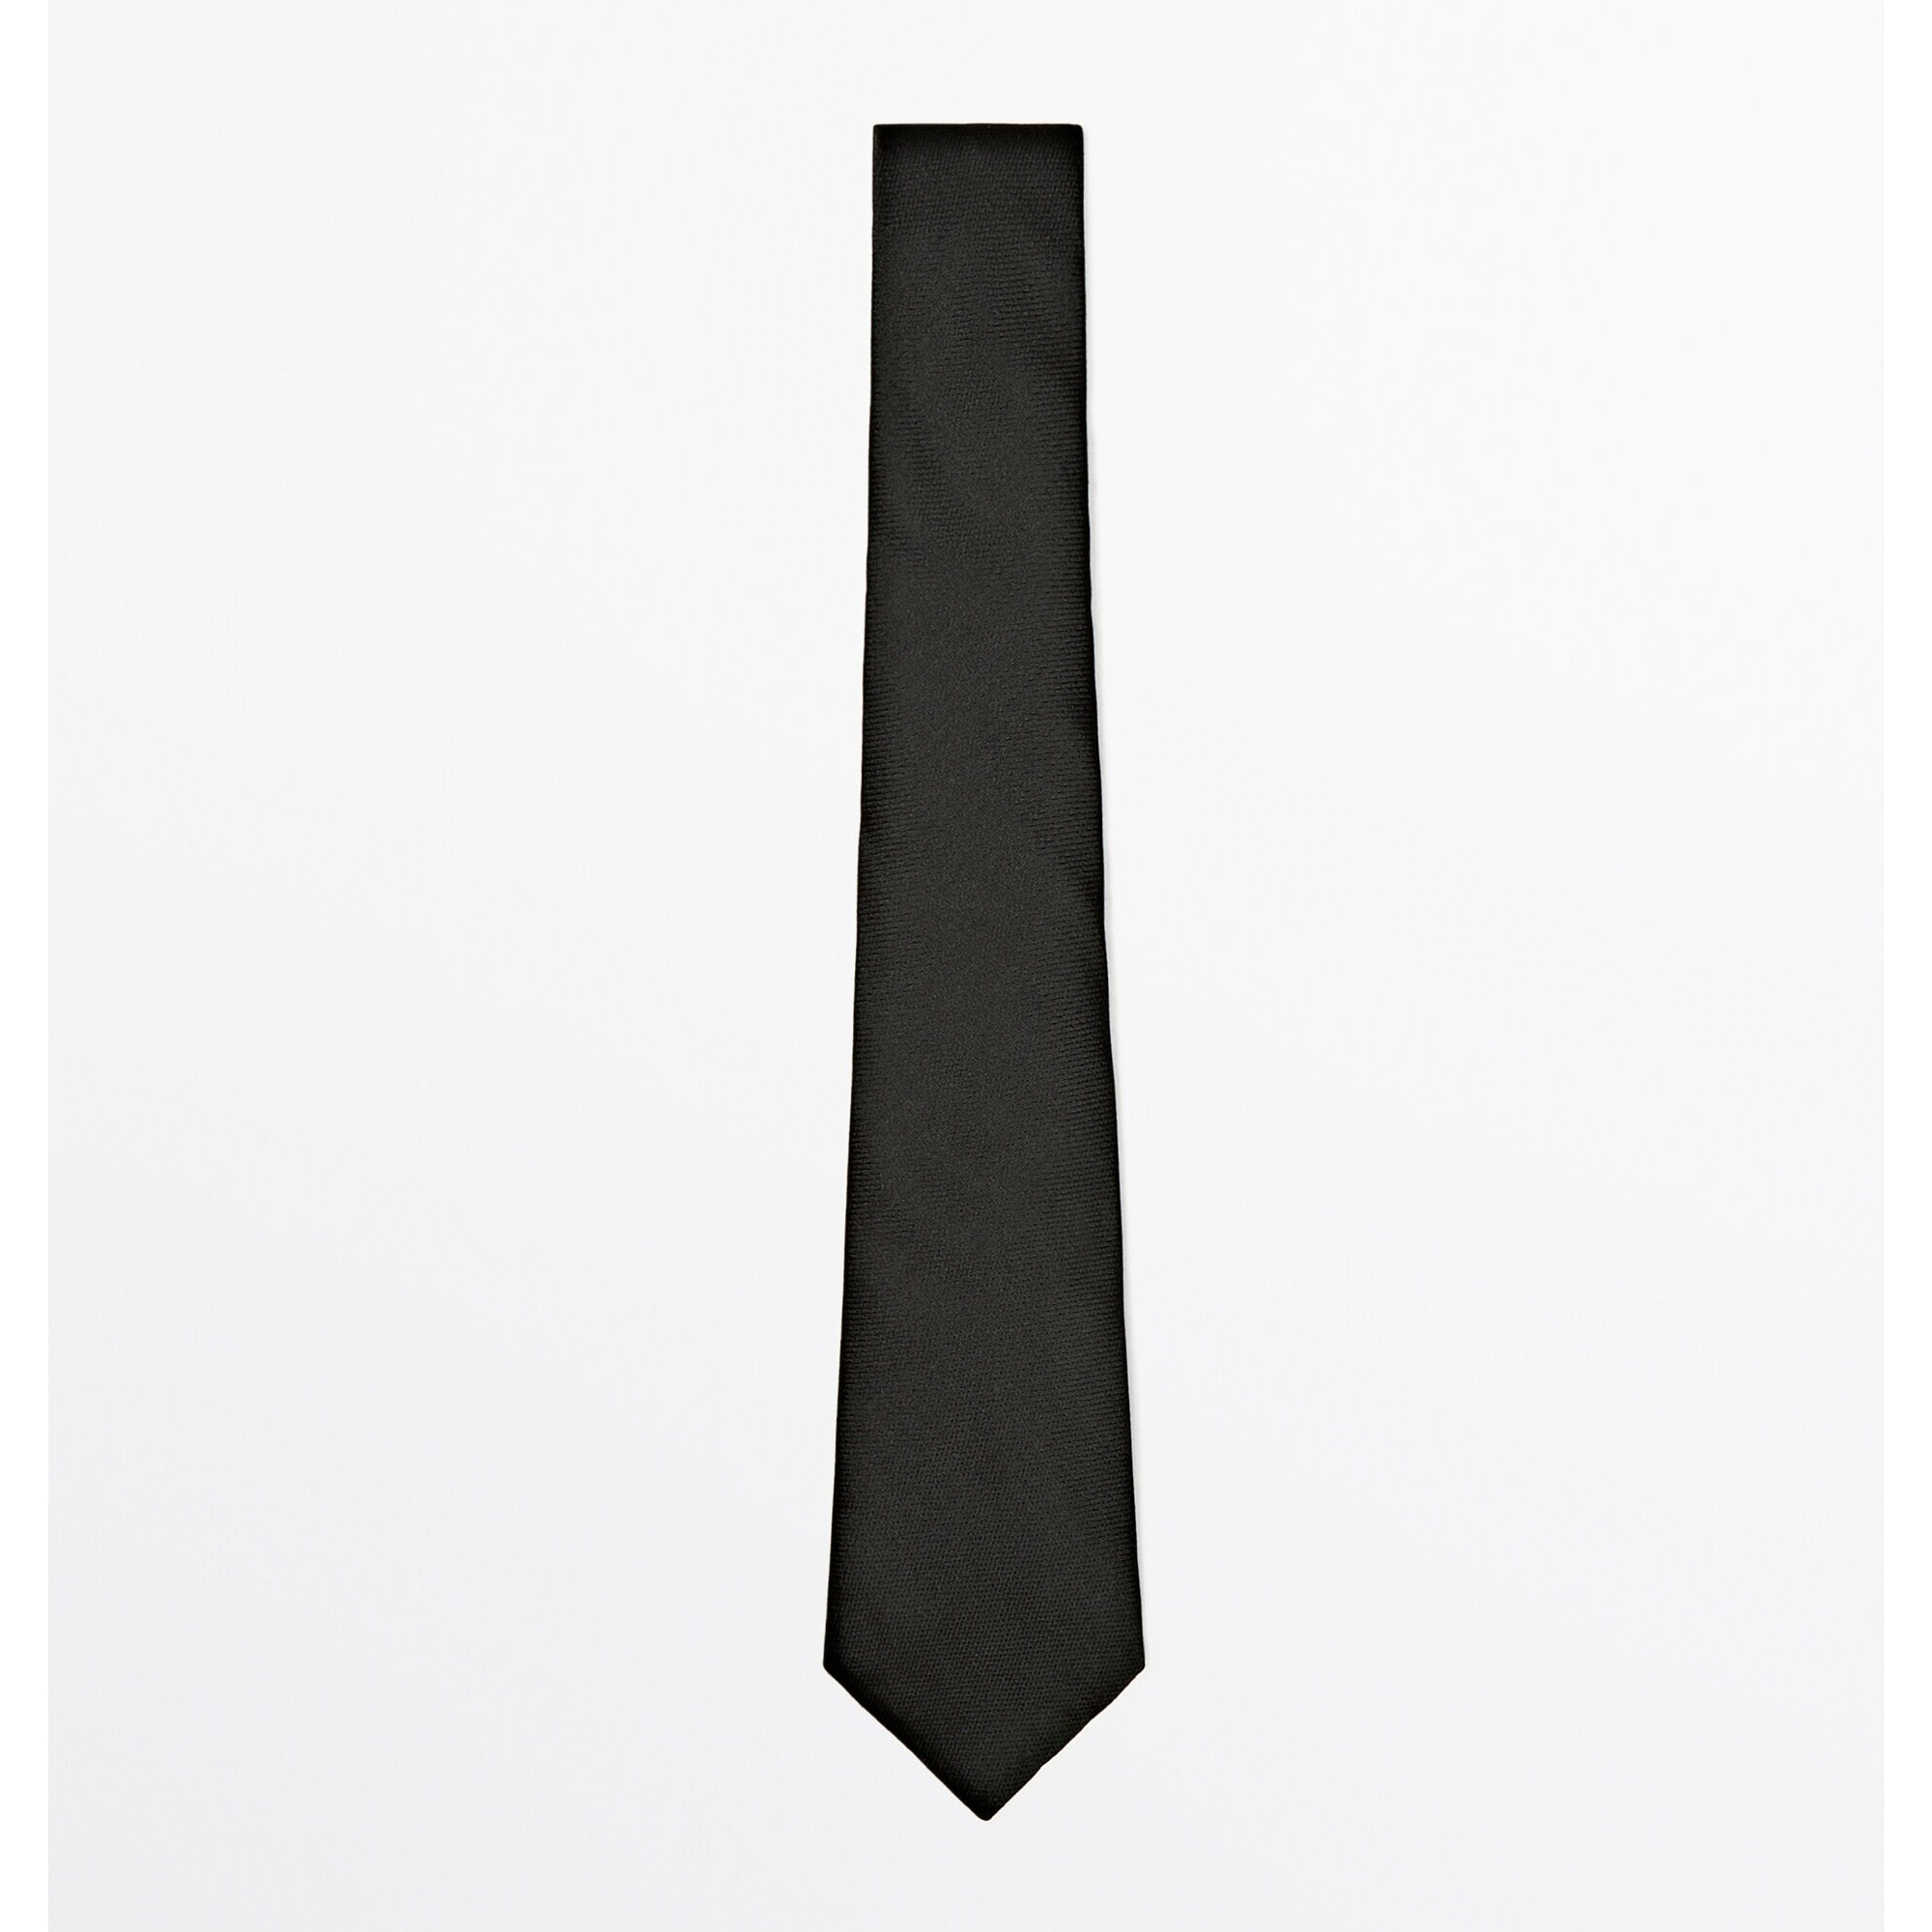 галстук zara 100% silk textured темно зеленый Галстук Massimo Dutti 100% Silk Textured, темно-зеленый